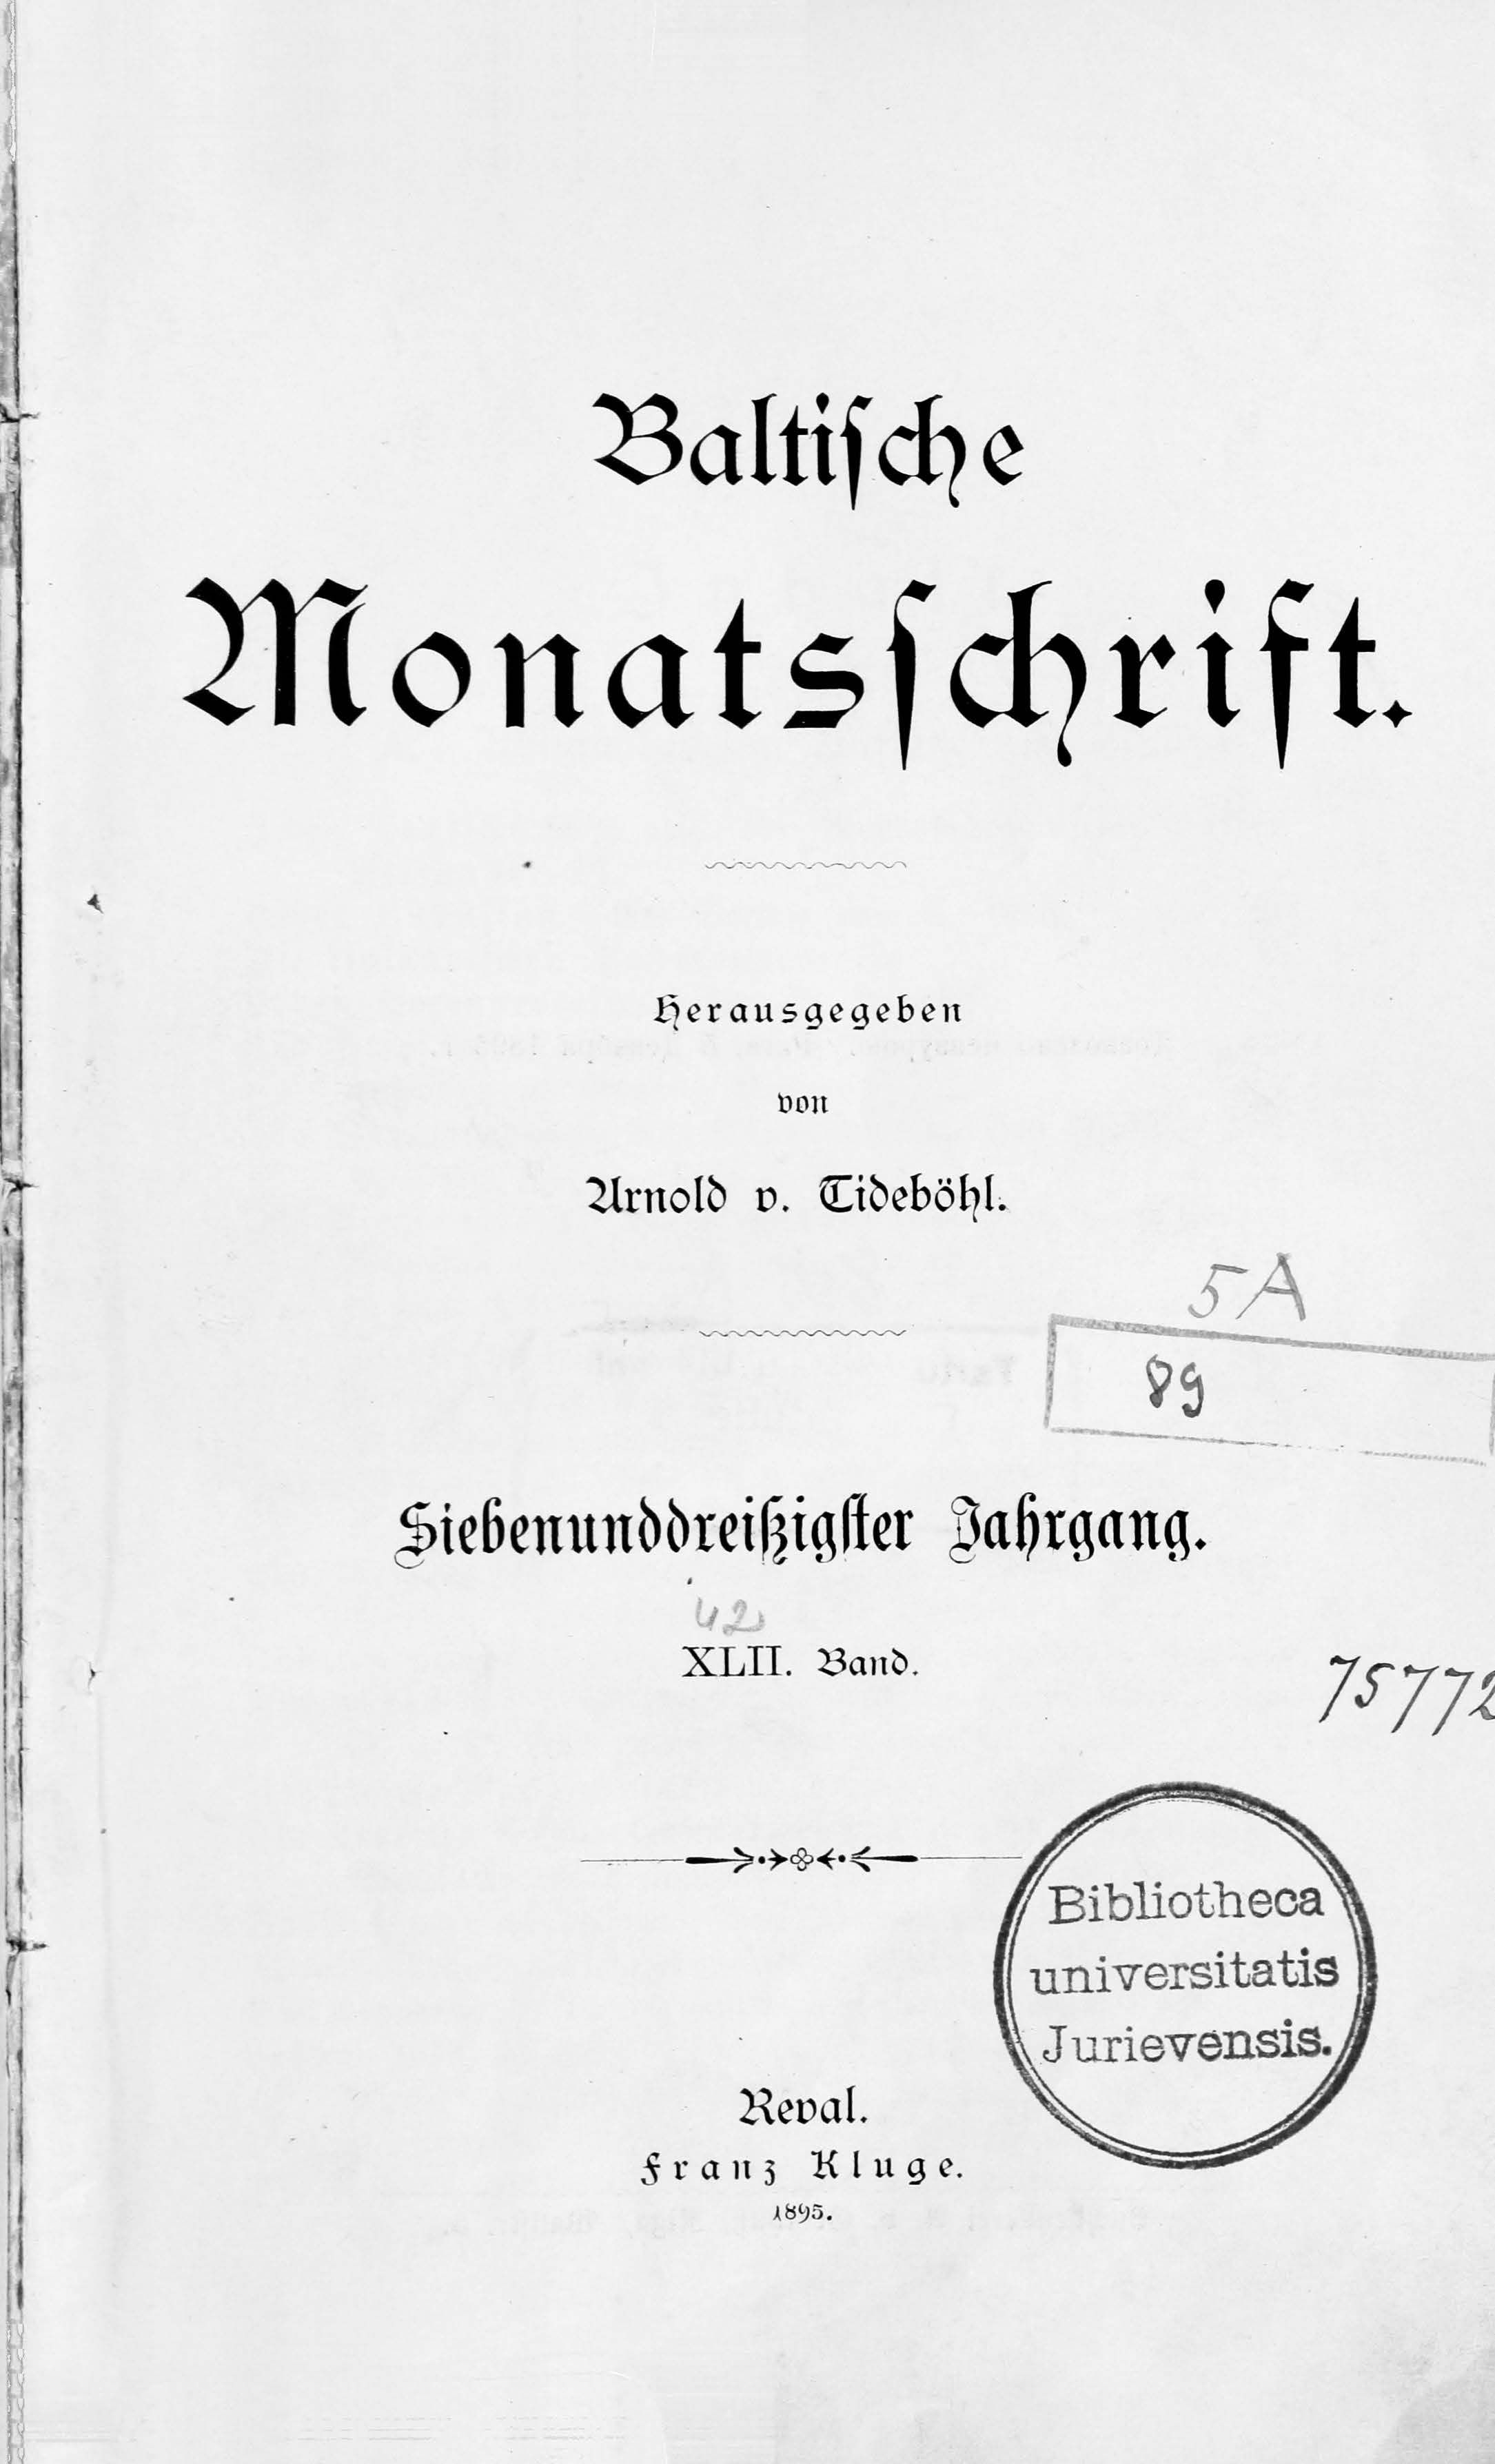 Baltische Monatsschrift [42] (1895) | 1. Title page